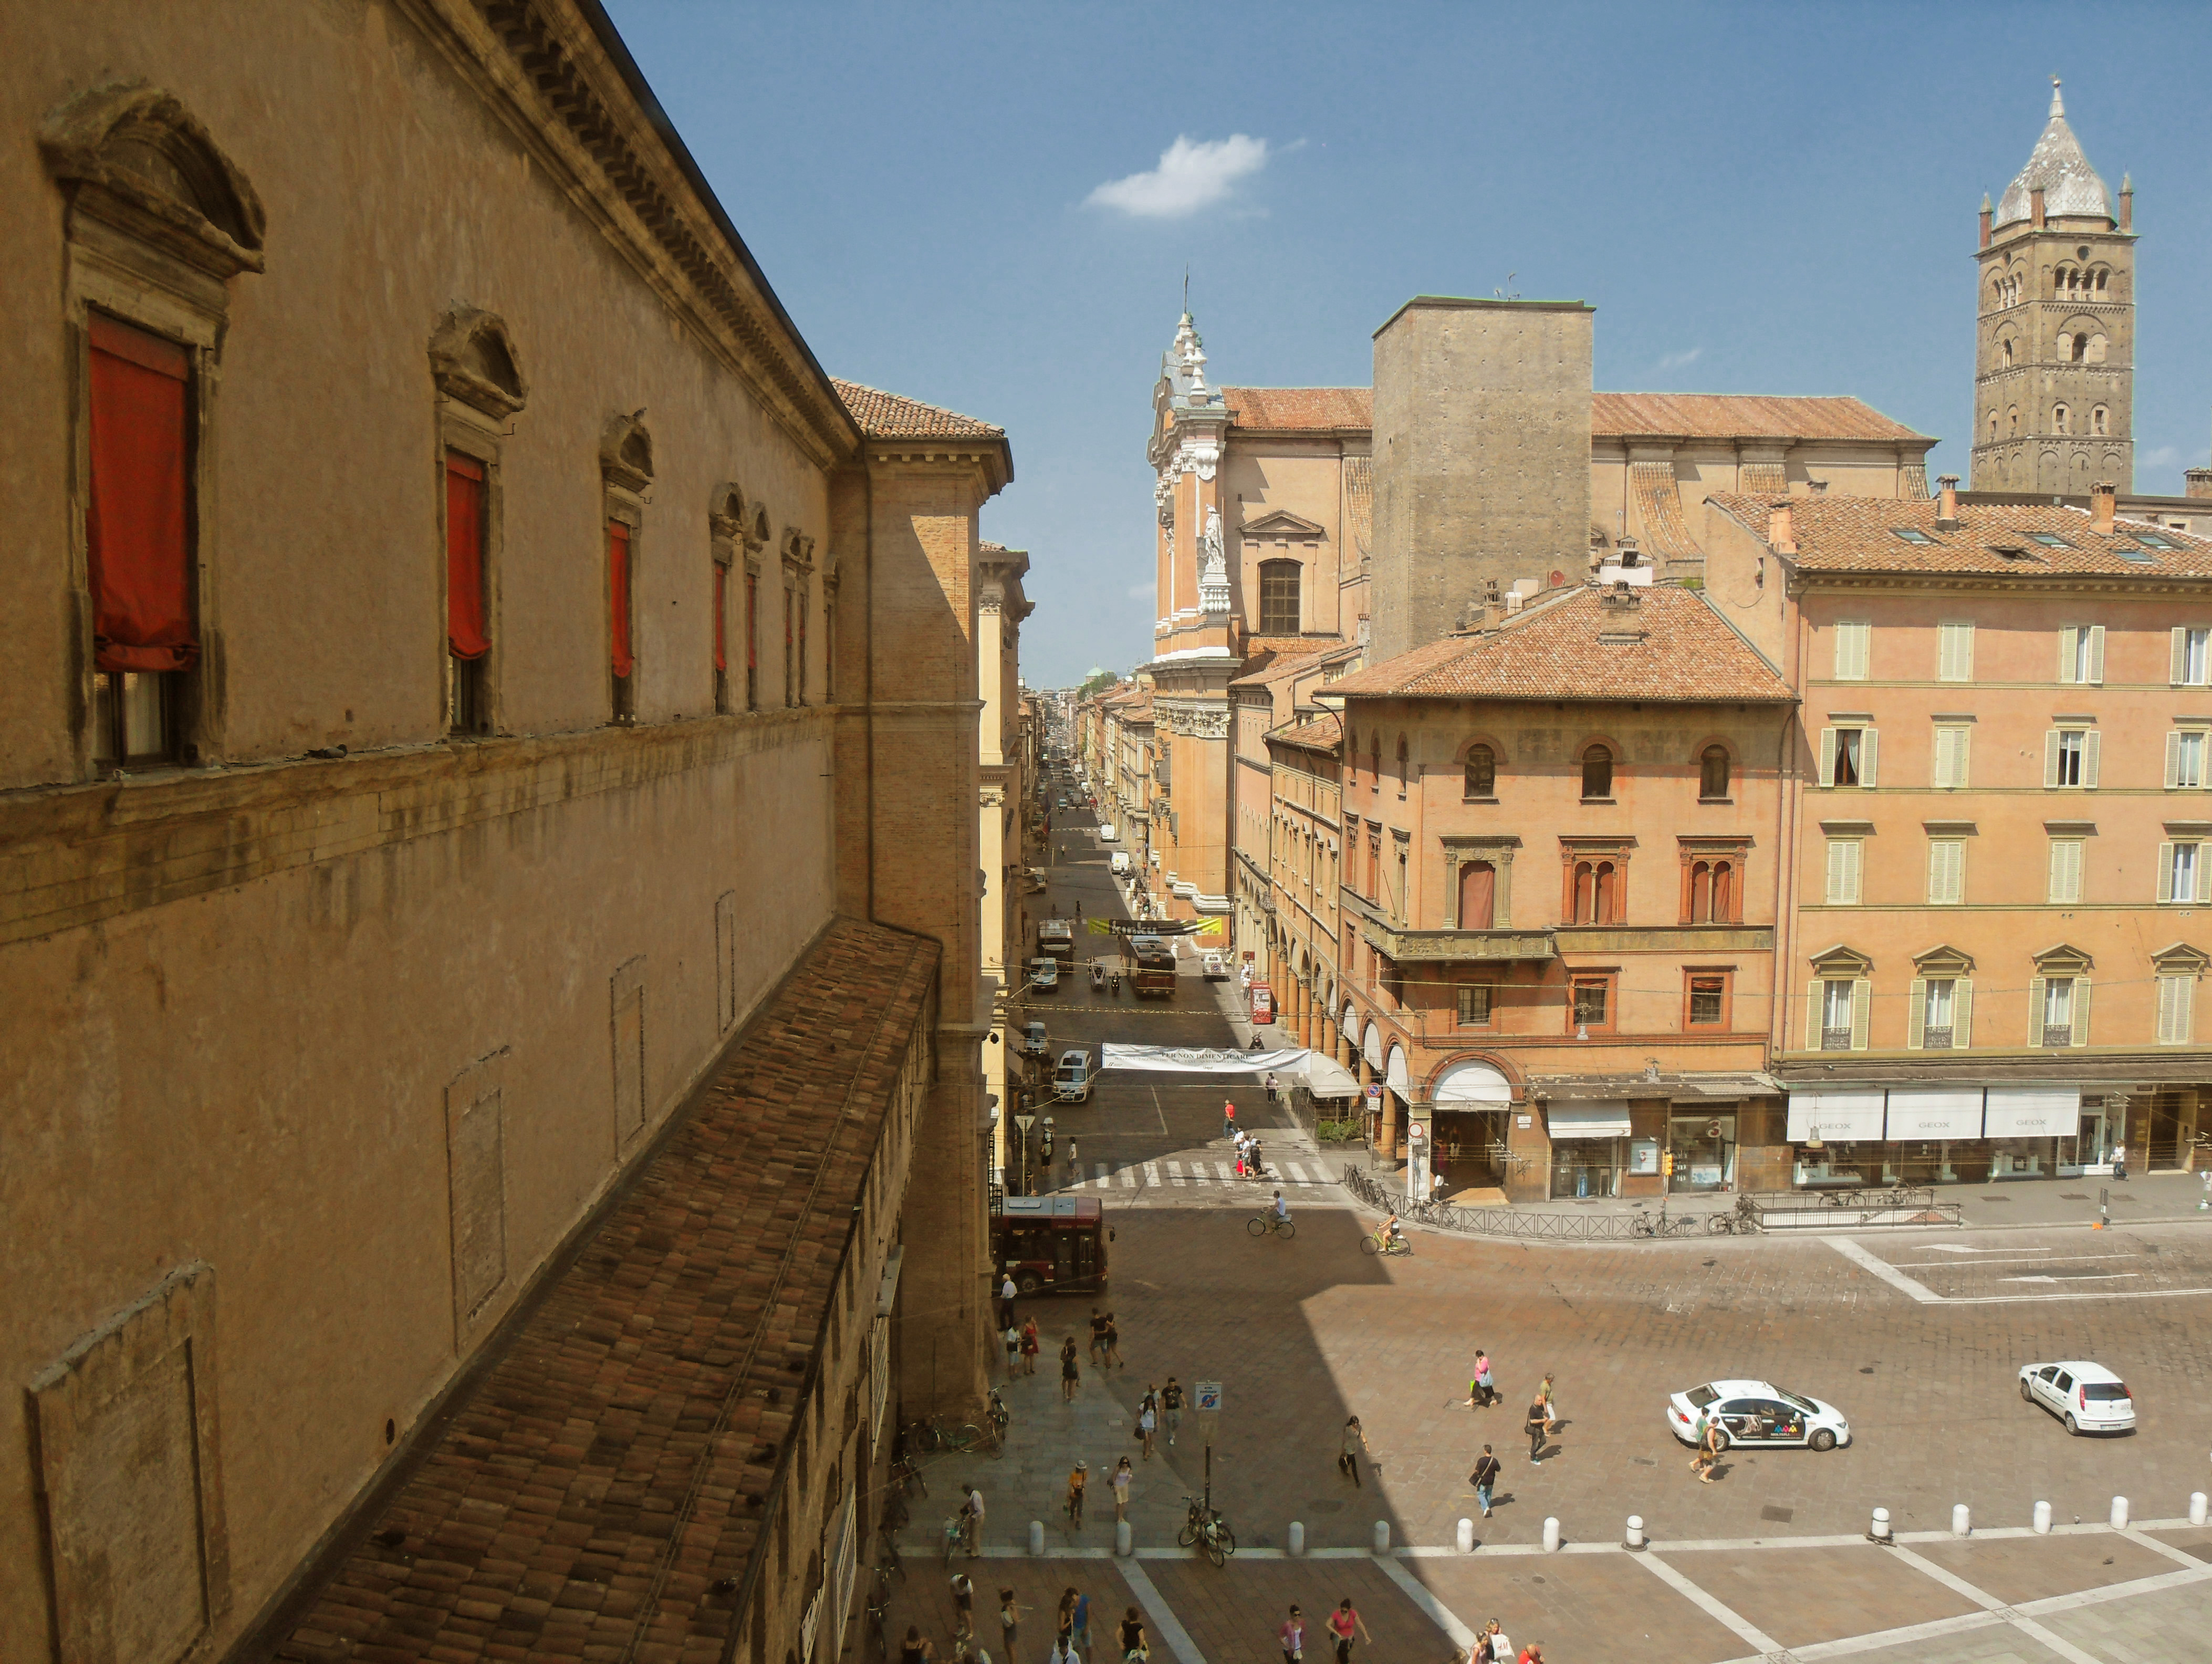 foto: https://upload.wikimedia.org/wikipedia/commons/1/1c/Piazza_Maggiore_da_Palazzo_d%27Accursio.jpg